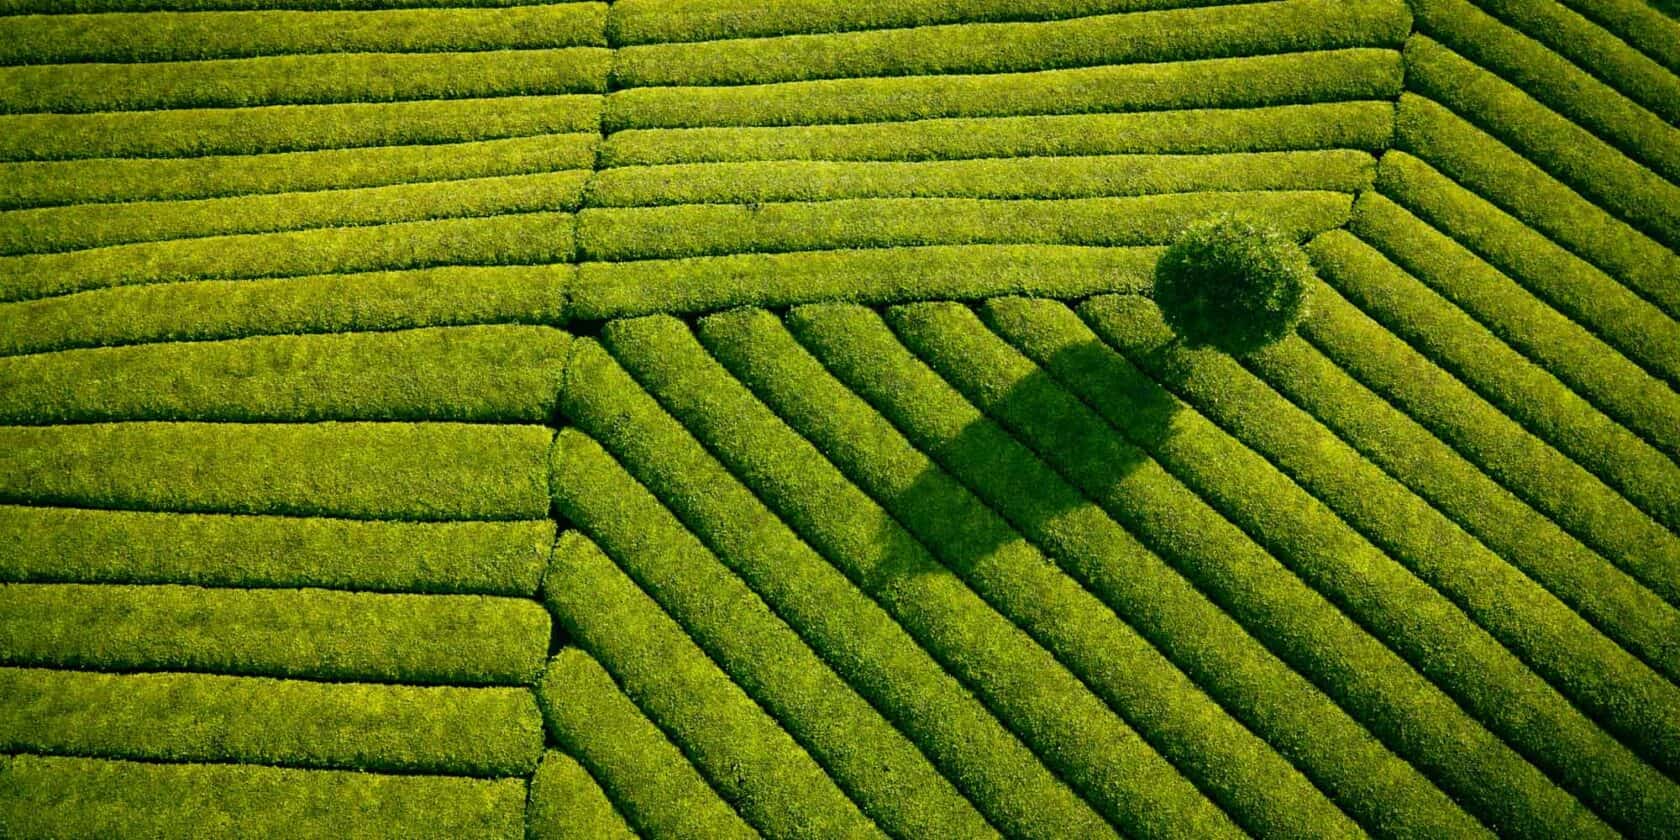 An aerial view of a tea field.